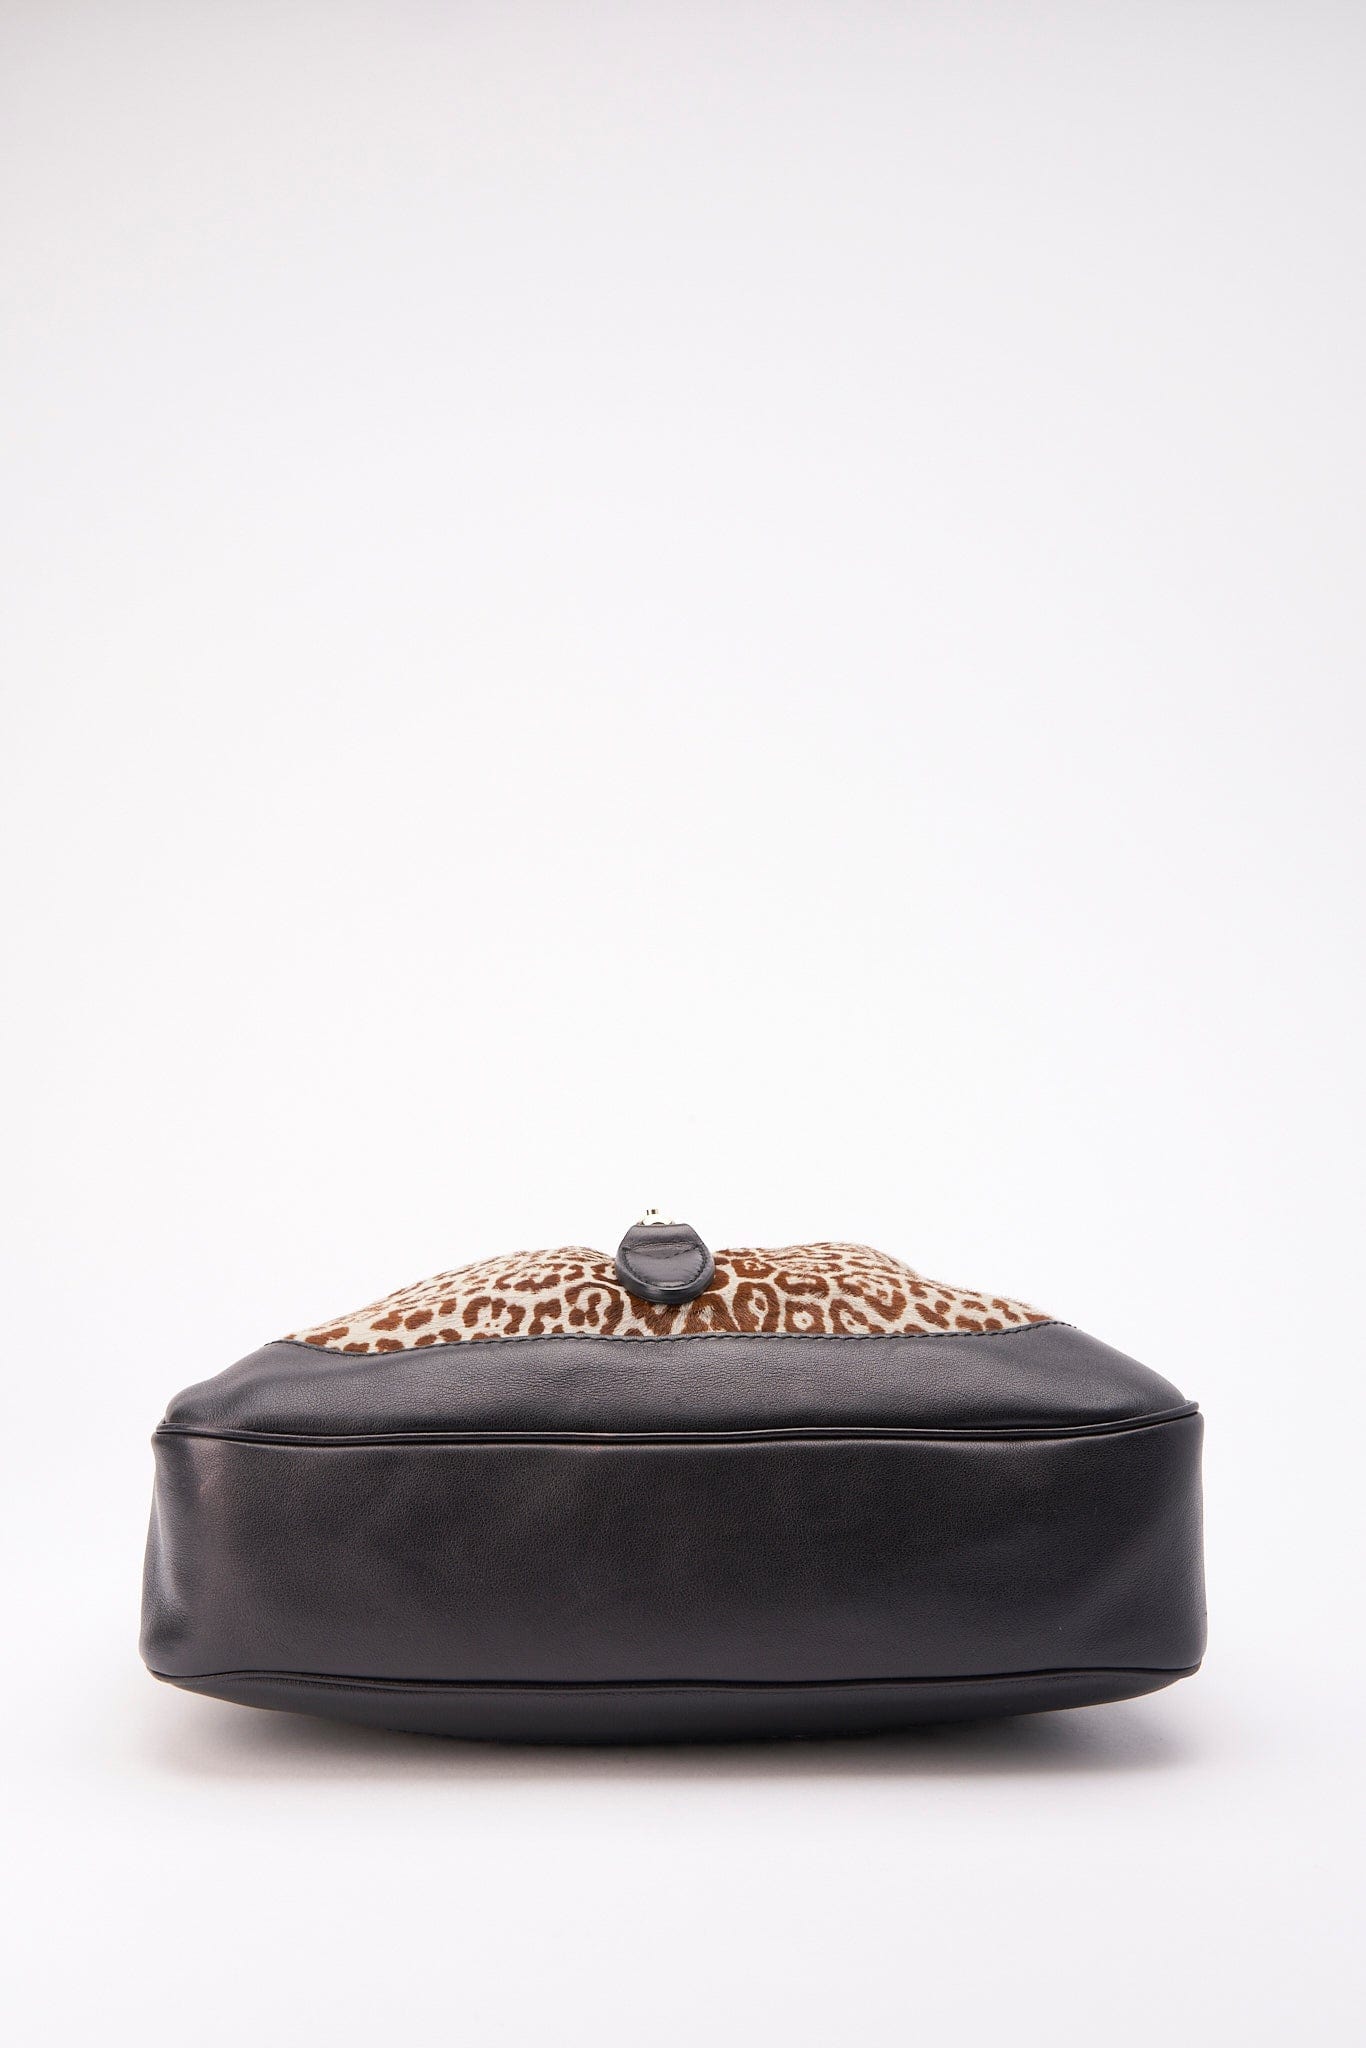 Vintage Gucci Leopard Jackie Bag